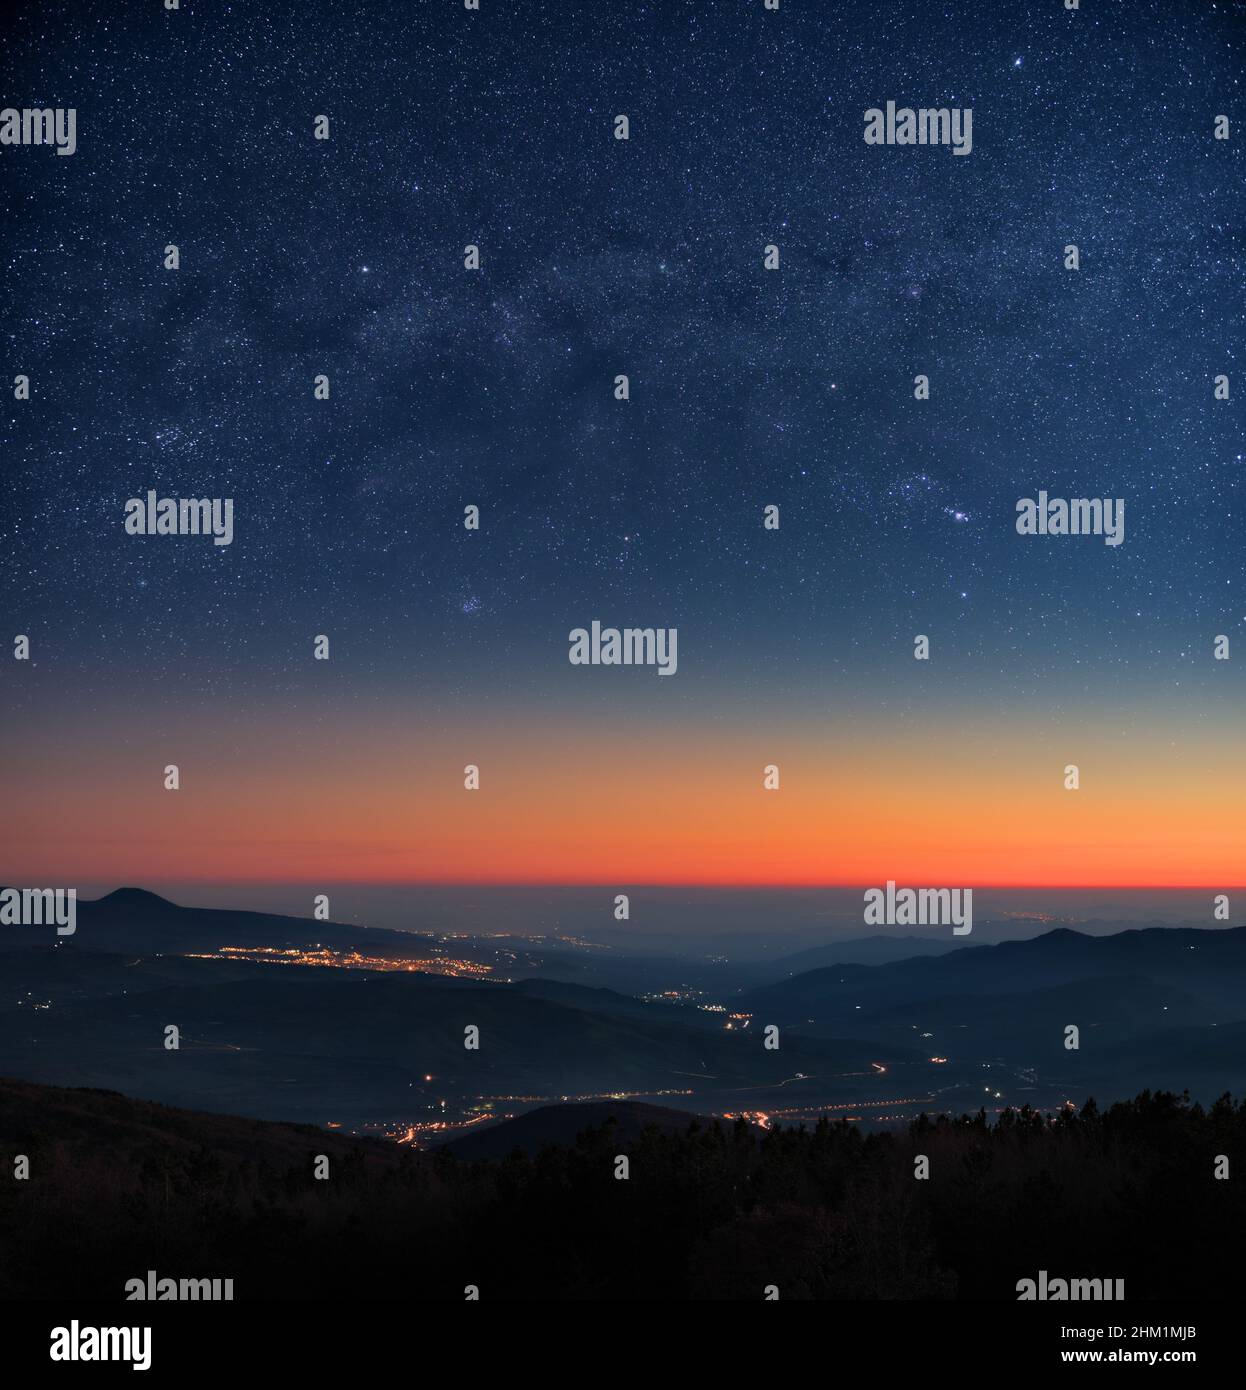 paesaggio di cielo stellato notte con le luci della città e i colori del crepuscolo all'orizzonte Foto Stock